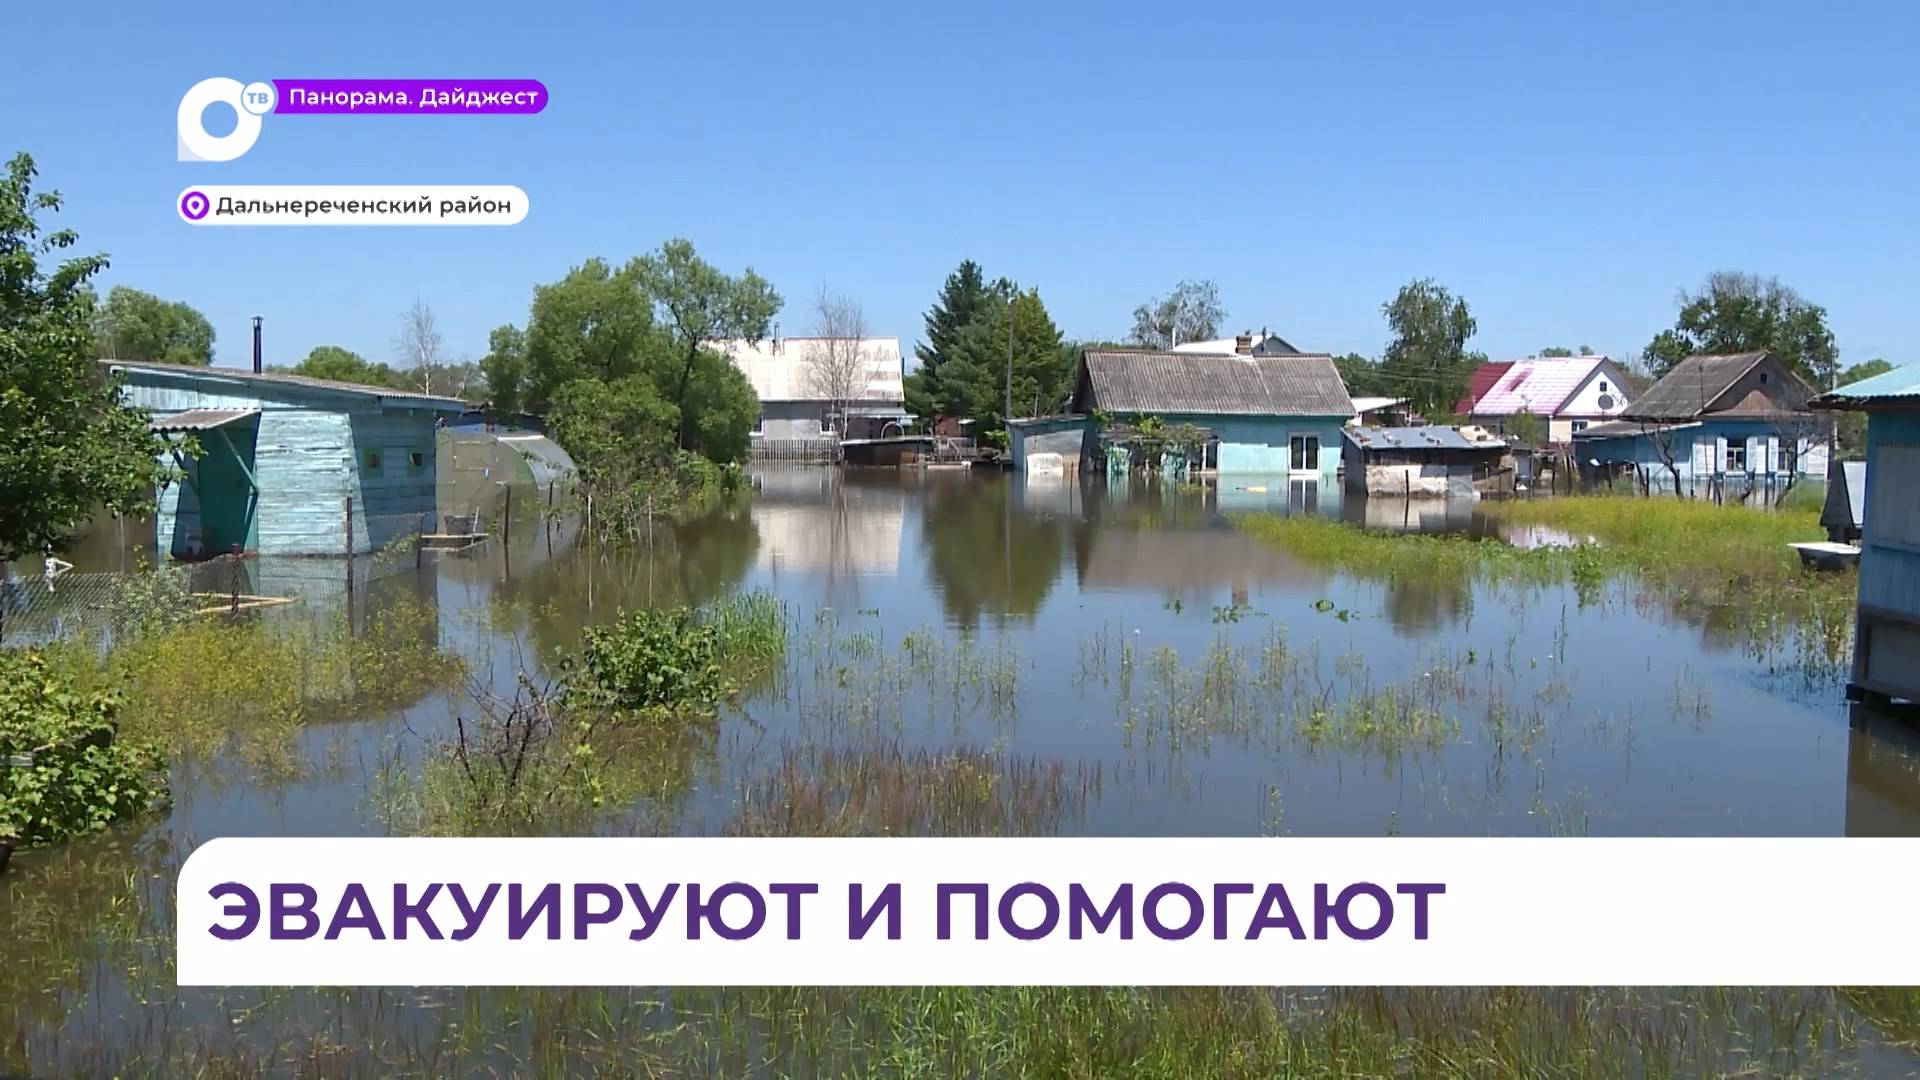 В Дальнереченске и Дальнереченском районе  по-прежнему остаётся сложная паводковая ситуация